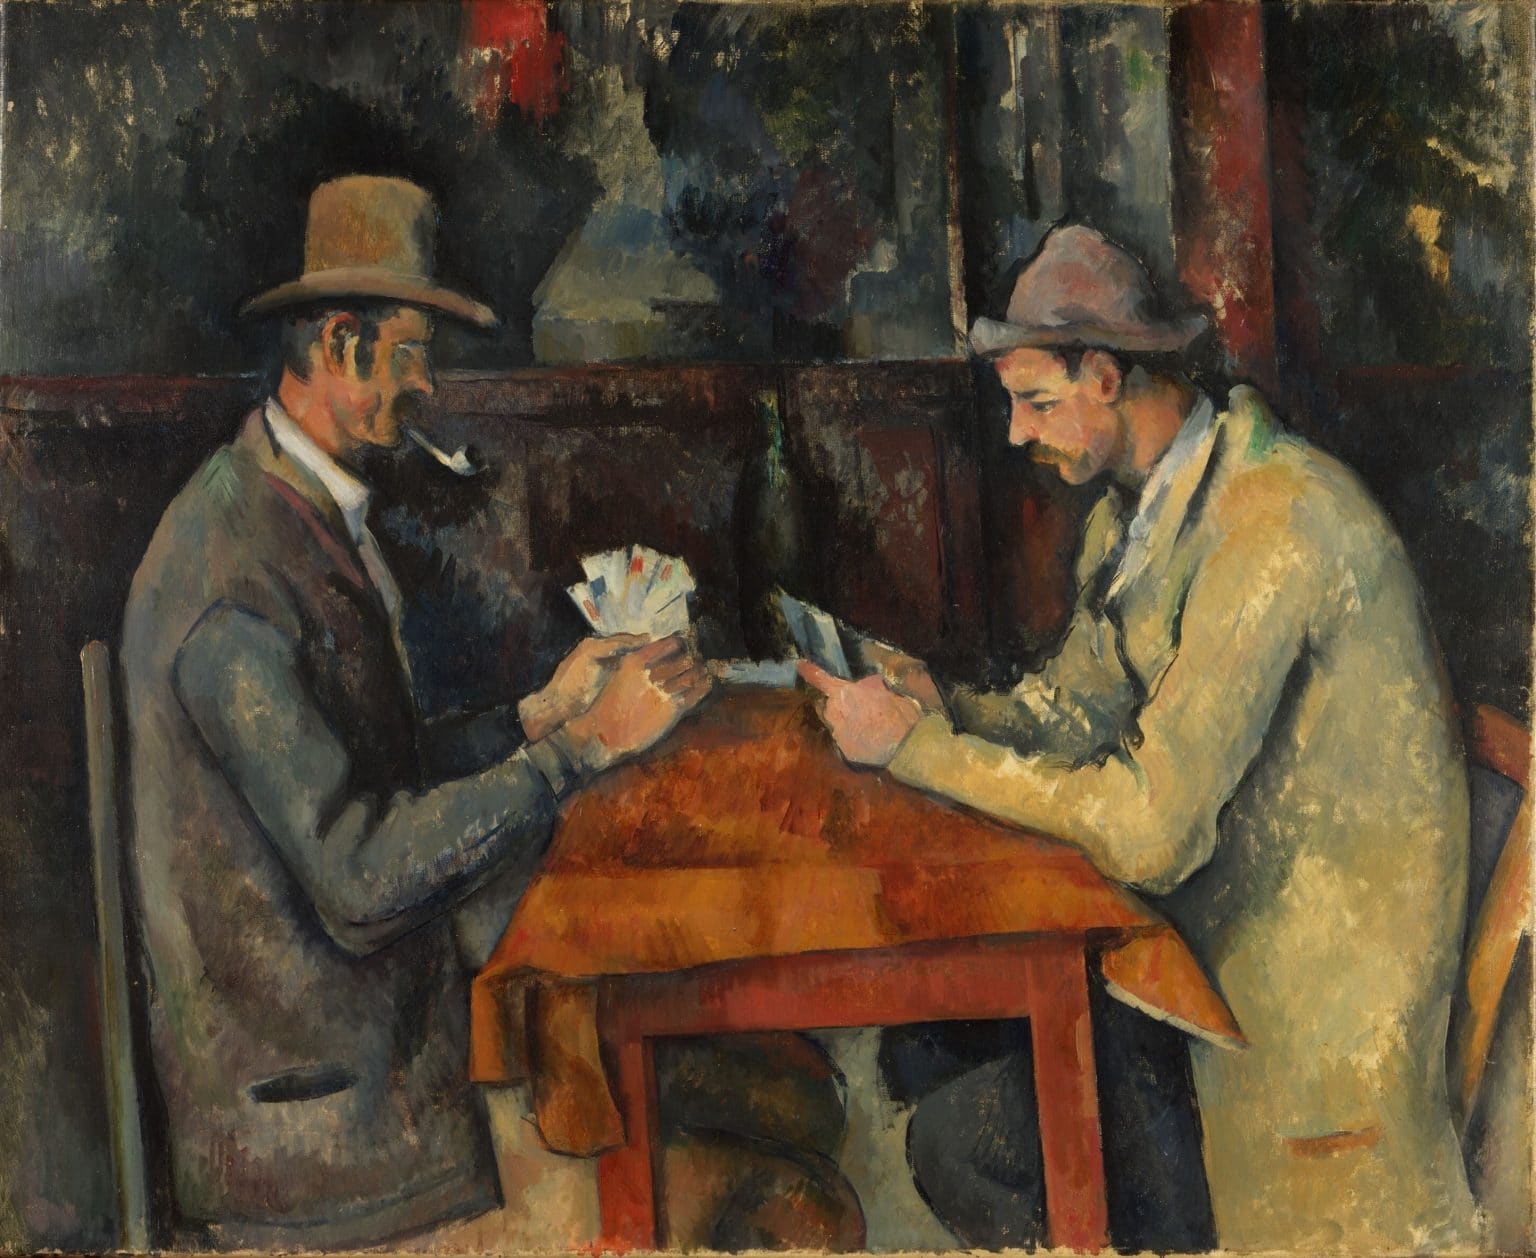 Paul_Cézanne,_1892-95,_Les_joueurs_de_carte_(The_Card_Players),_60_x_73_cm,_oil_on_canvas,_Courtauld_Institute_of_Art,_London